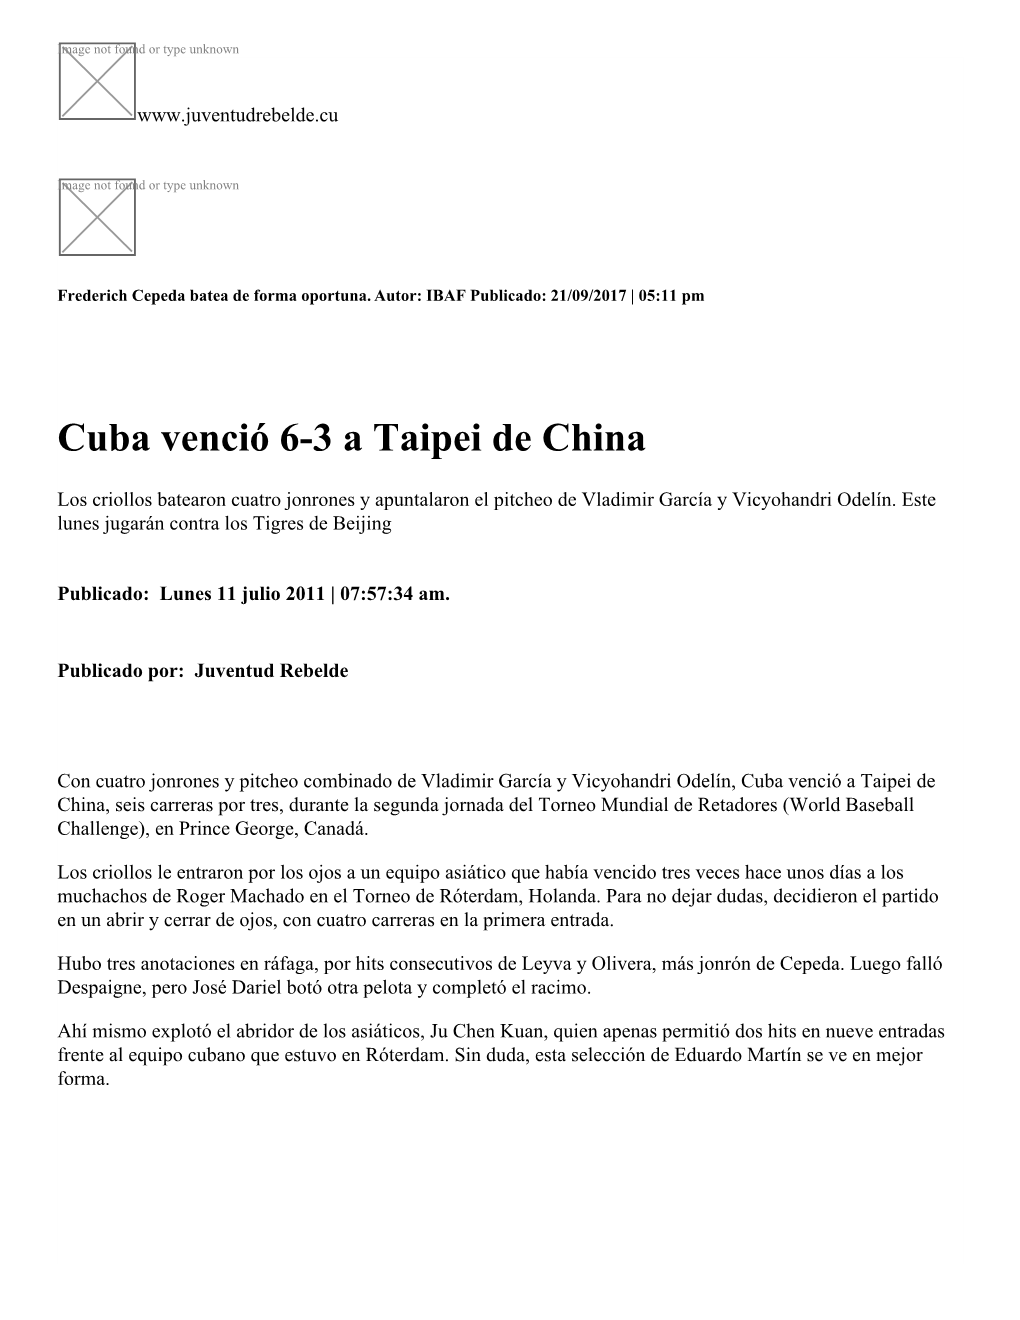 Cuba Venció 6-3 a Taipei De China